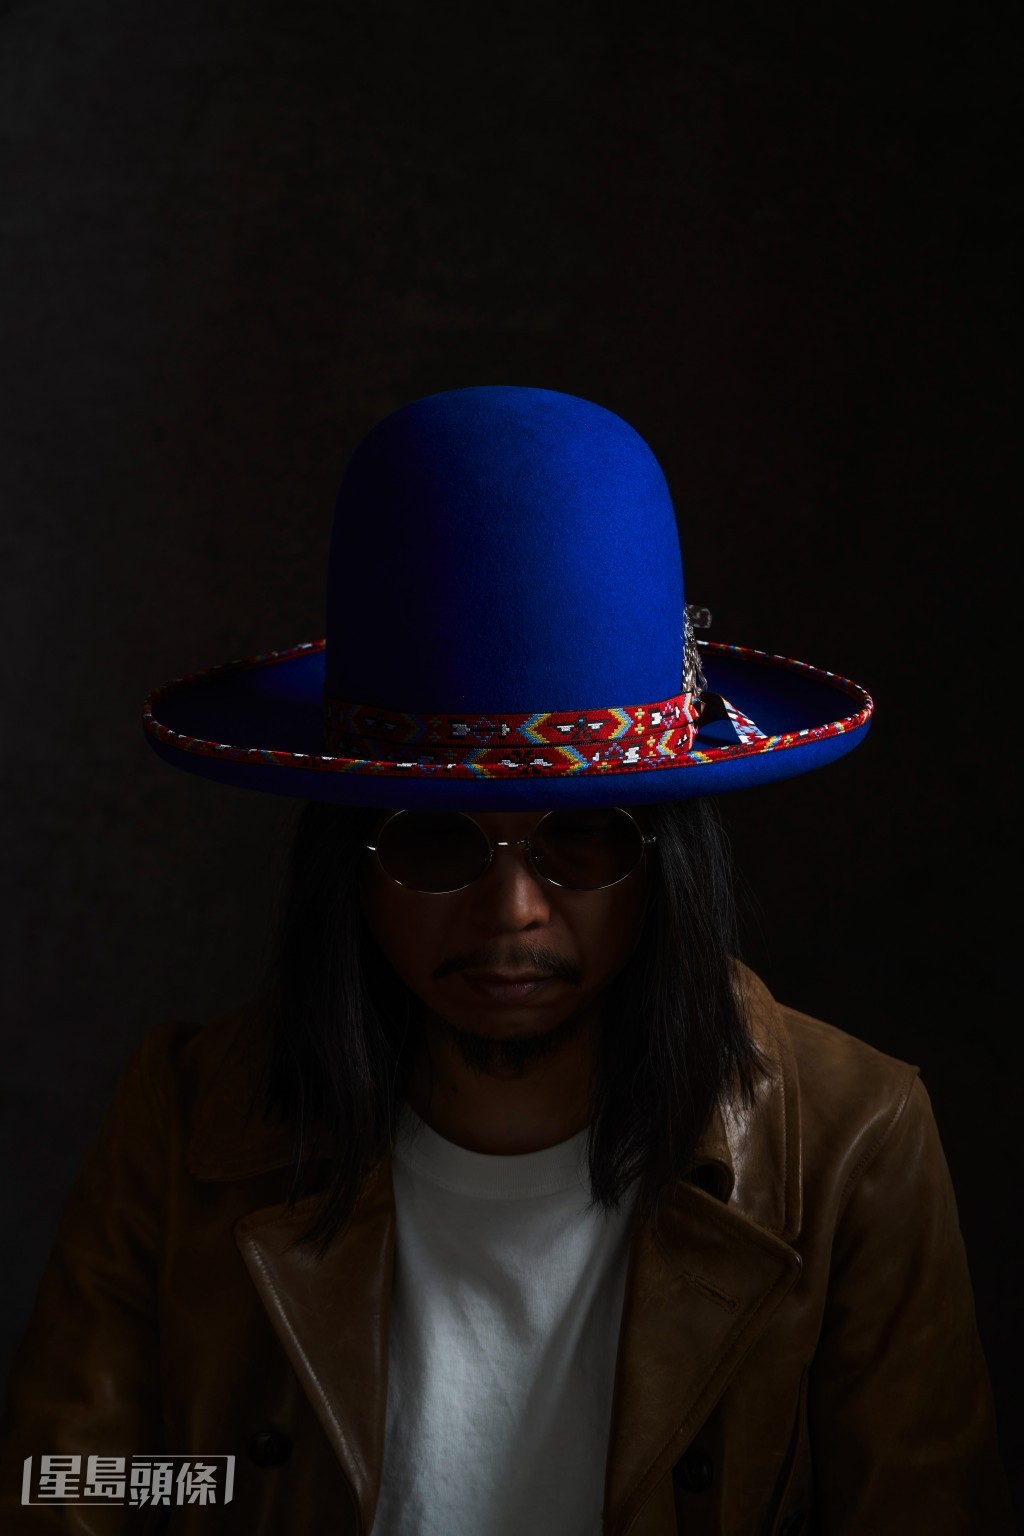 王雙駿說每頂帽都有不同的音樂故事。